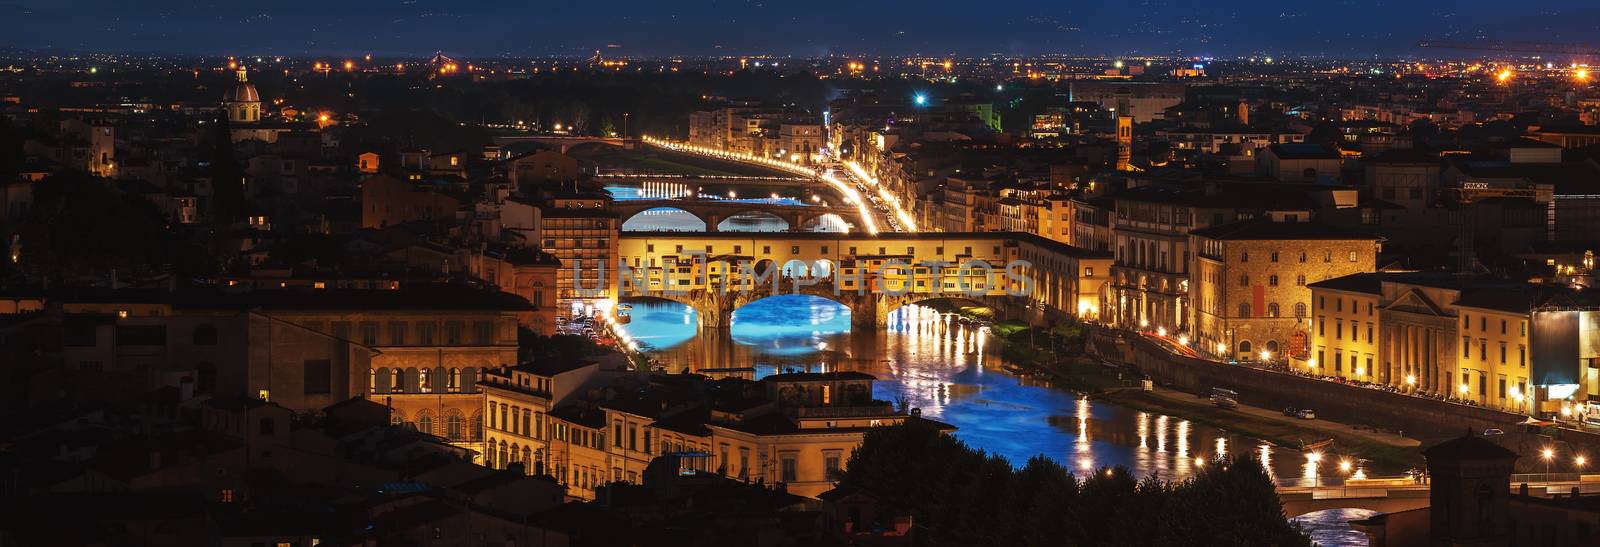 Night over Ponte Vecchio by Givaga